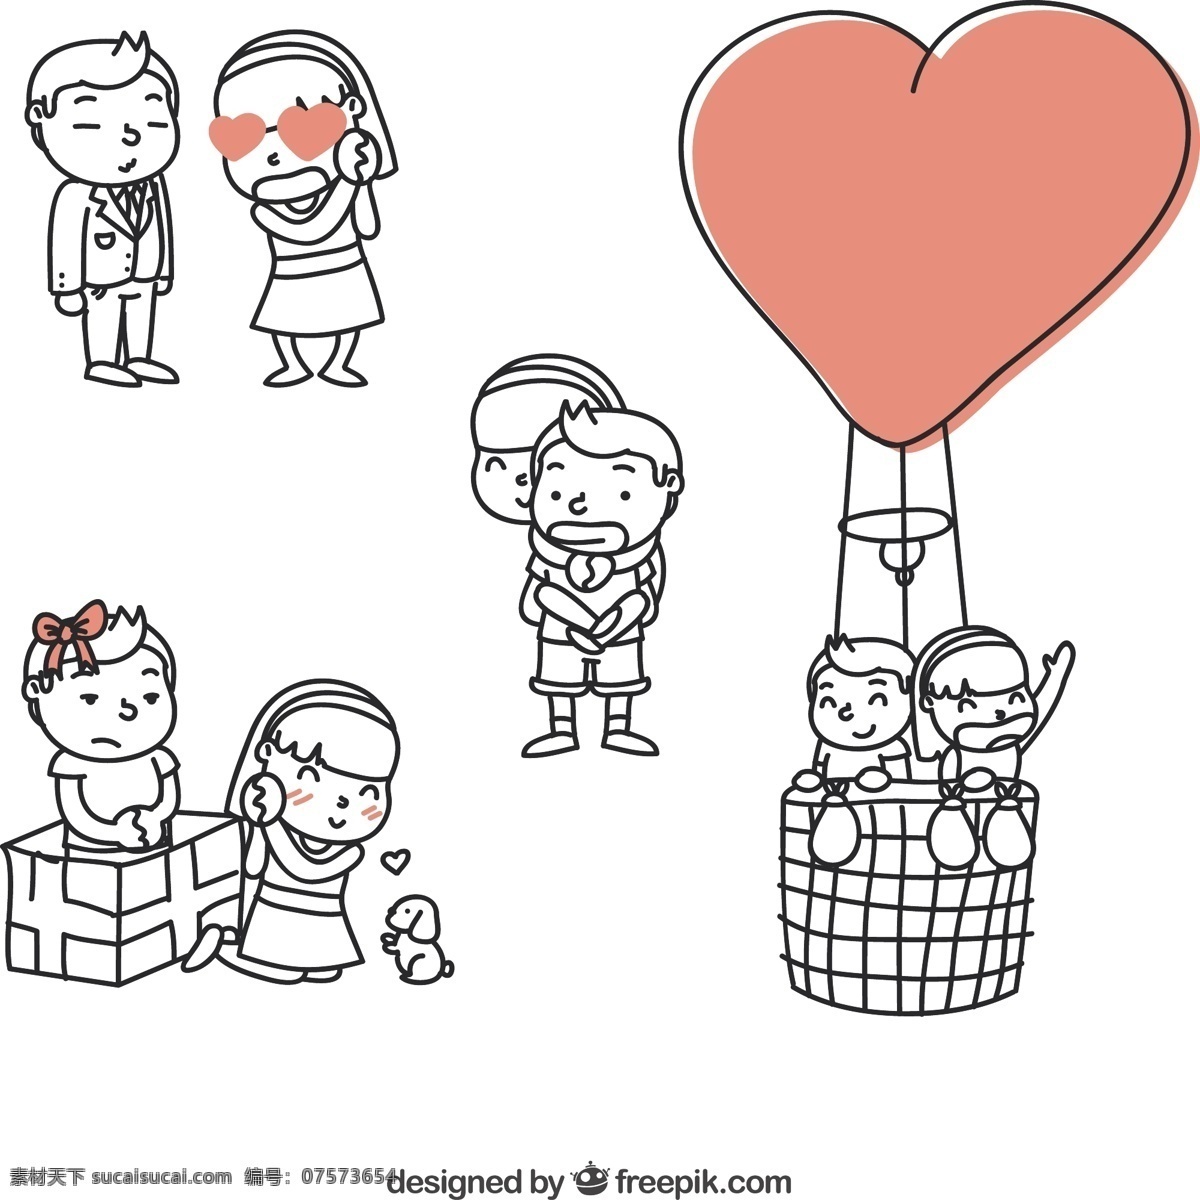 手绘情侣插图 心中有爱 绘制 气球 可爱 夫妇 绘画 空气 浪漫 空调 手工 关系 爱情 情侣 手绘 男朋友 女友